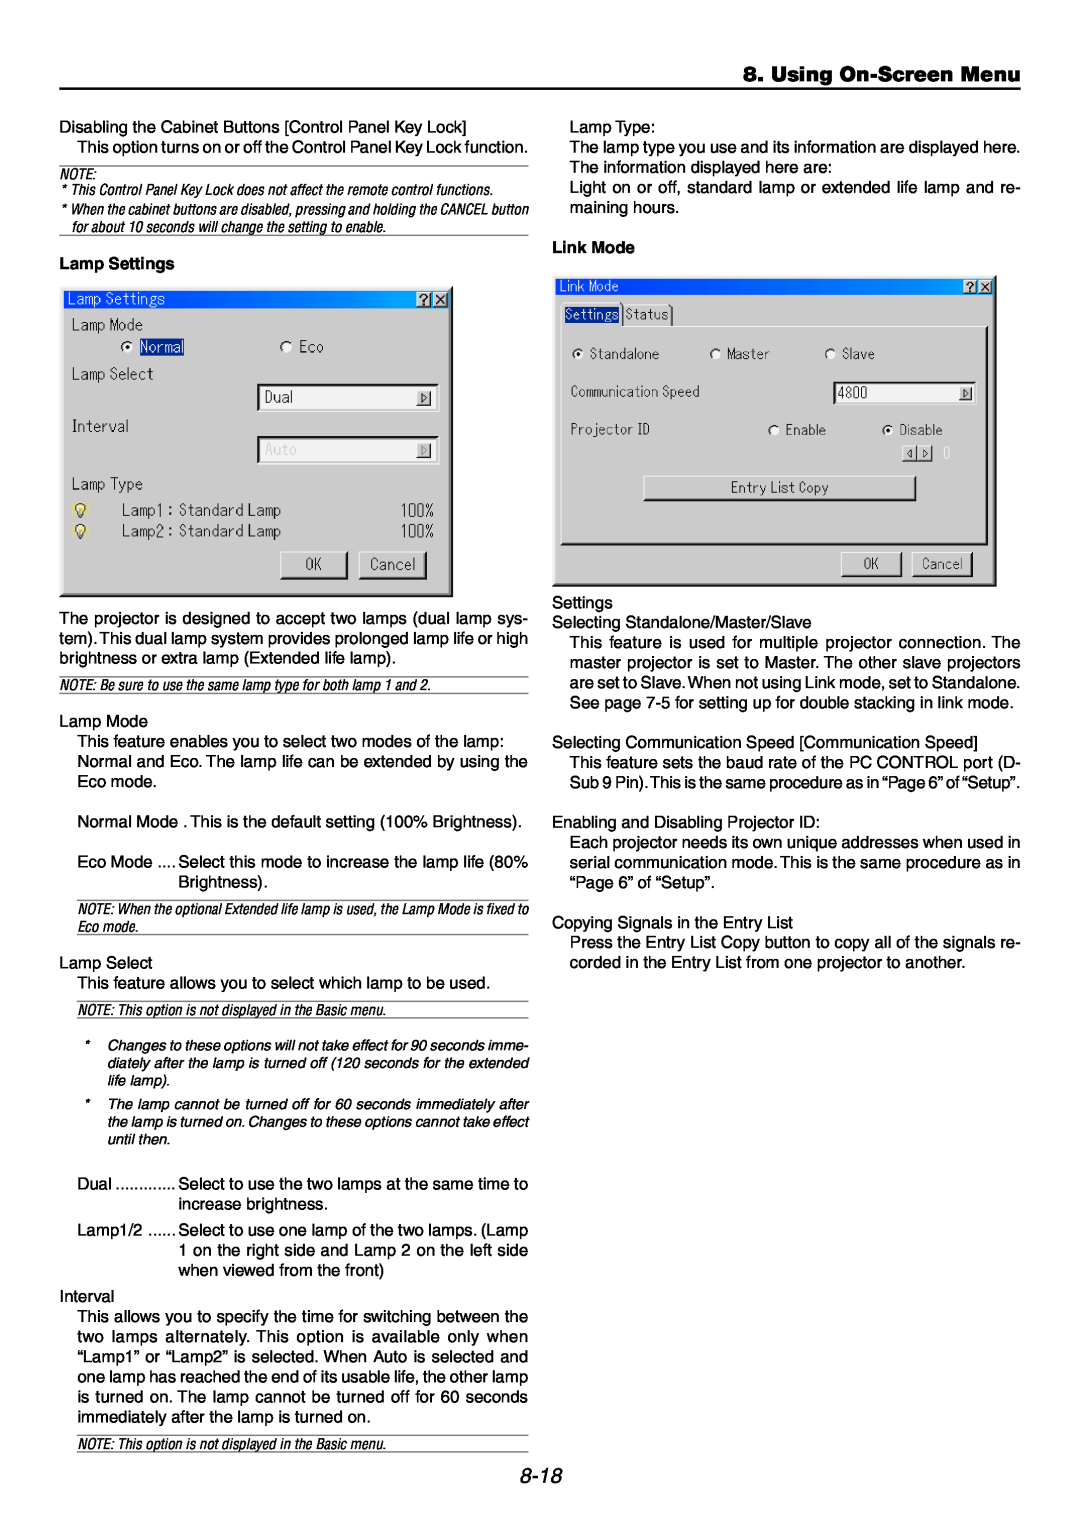 NEC GT6000 user manual Using On-ScreenMenu, 8-18, Lamp Settings, Link Mode 